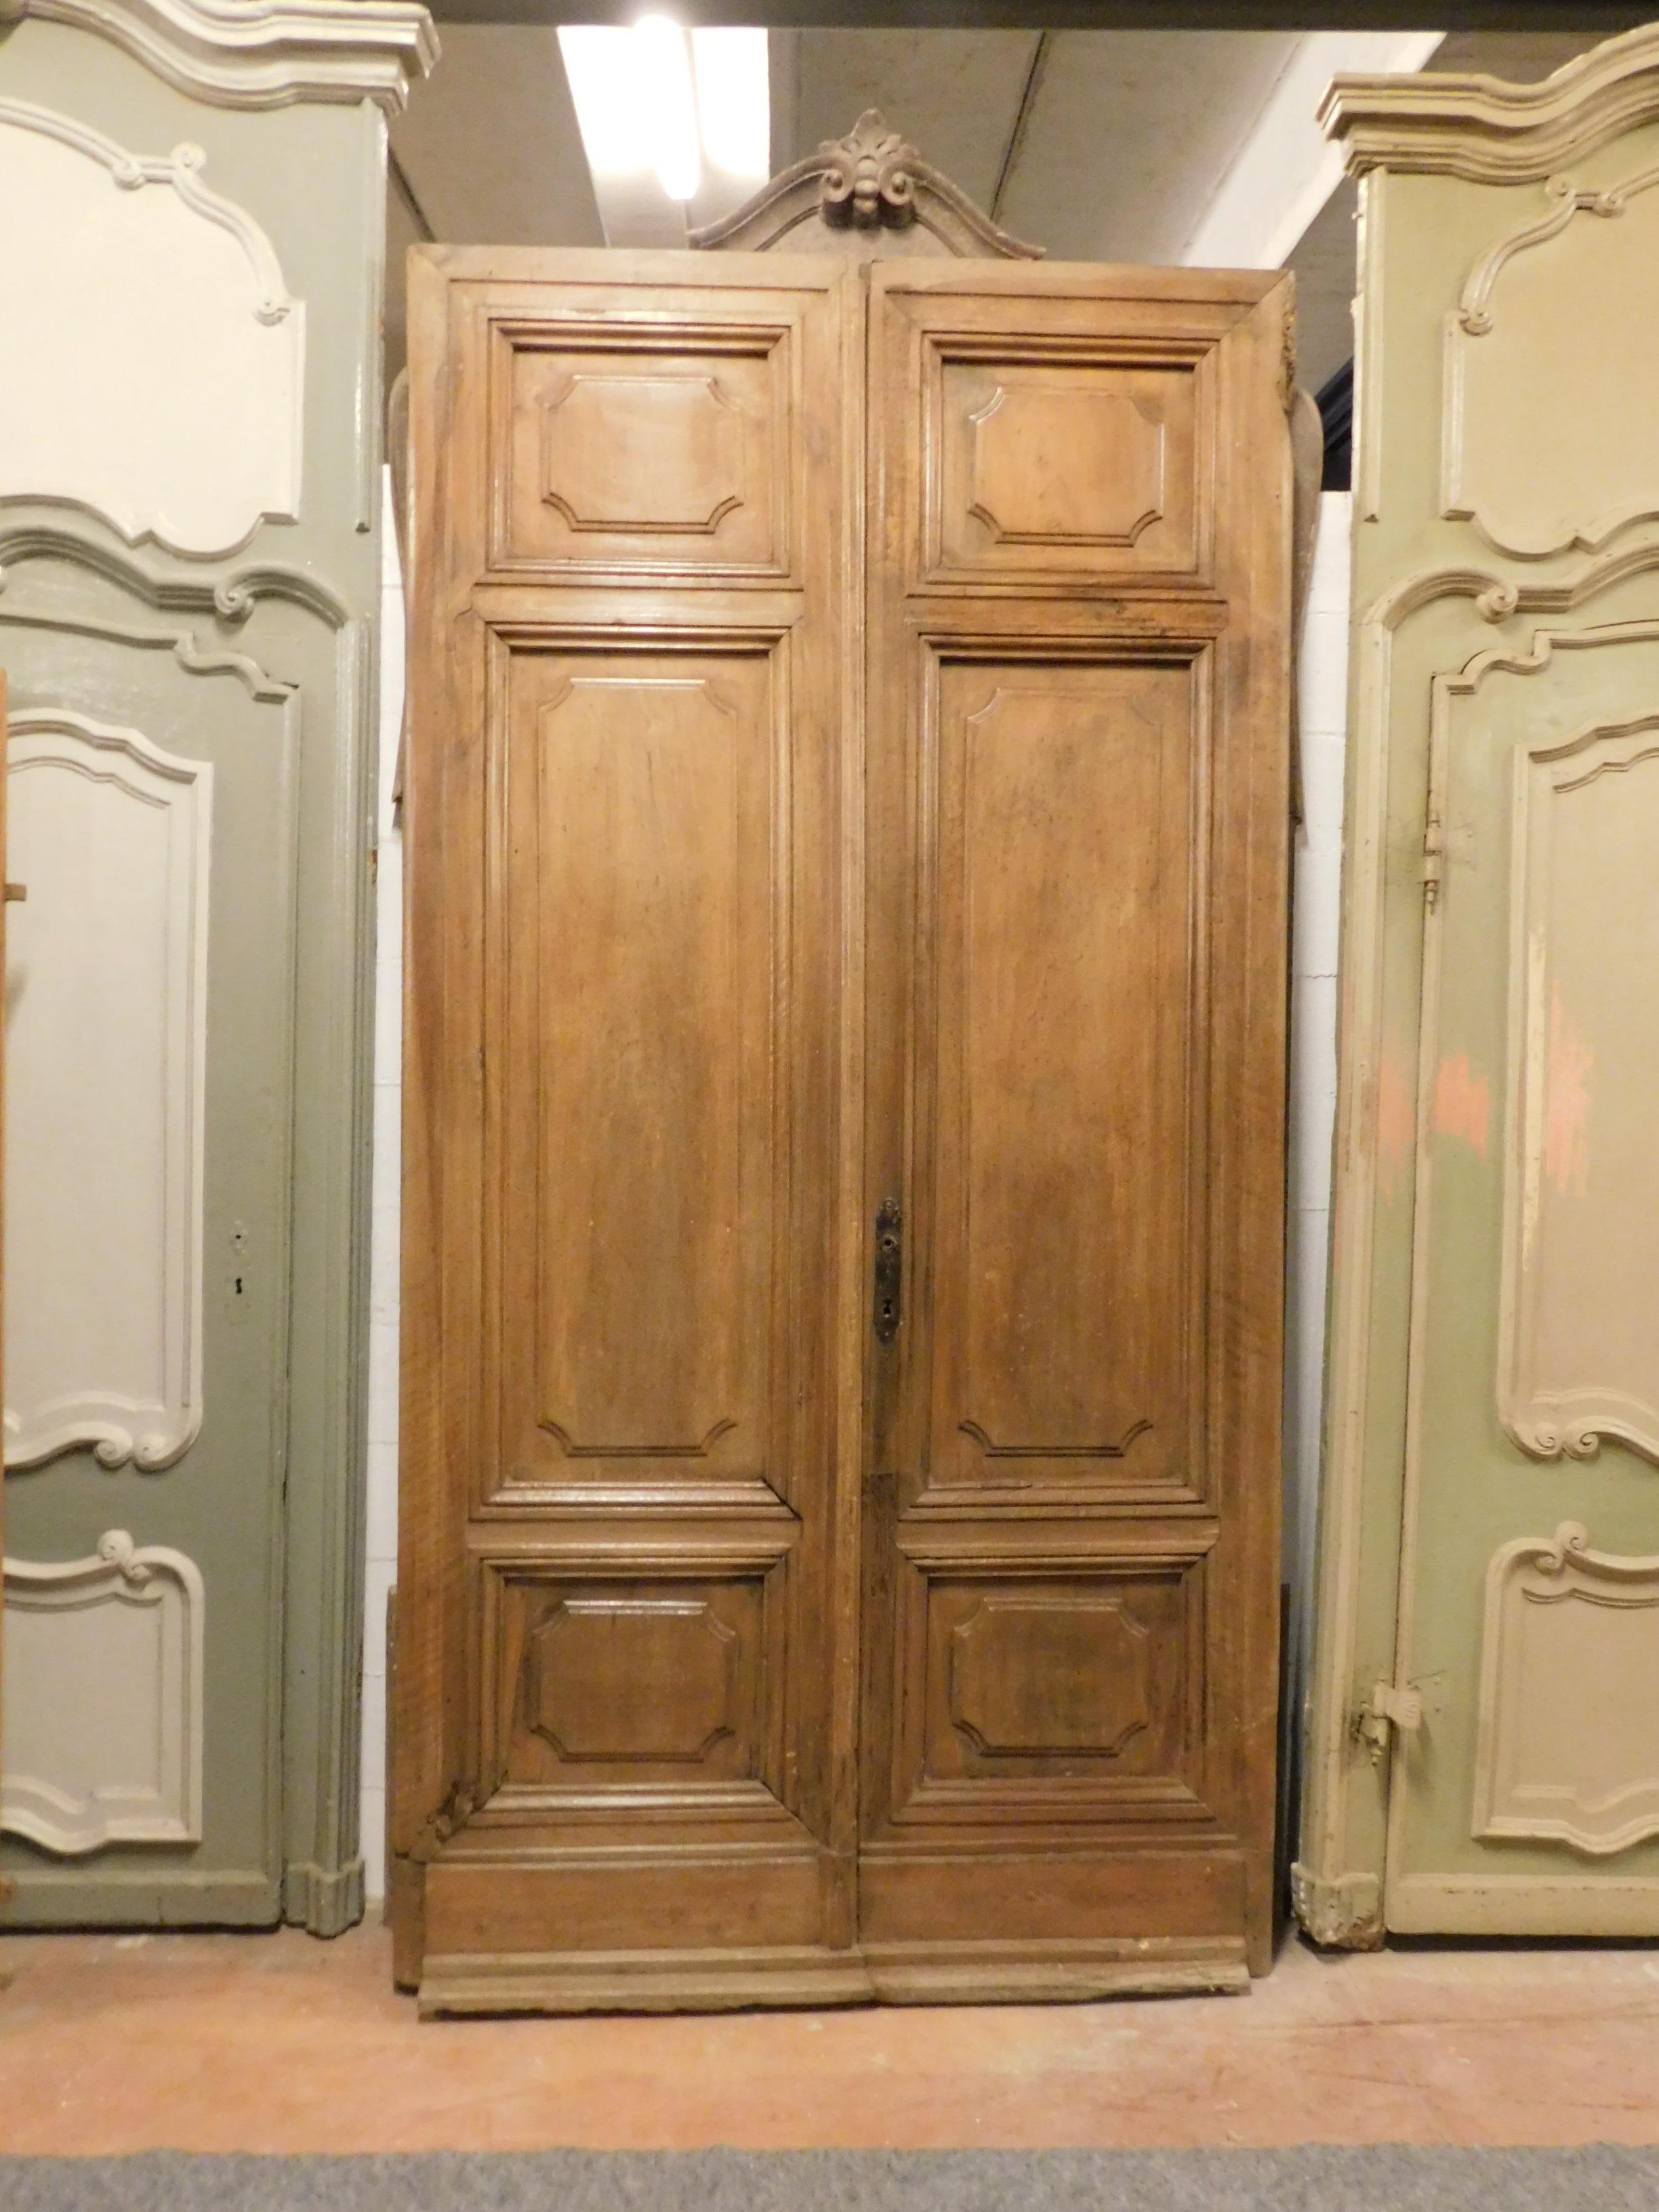 Antike zweiflügelige Eingangstür aus honigfarbenem, hellbraunem Nussbaum, die in den frühen 1900er Jahren in Italien handgefertigt wurde.
Sehr elegante und robuste Struktur, in kostbarem Nussbaum, es wird verkauft, wie es jetzt ist, ohne